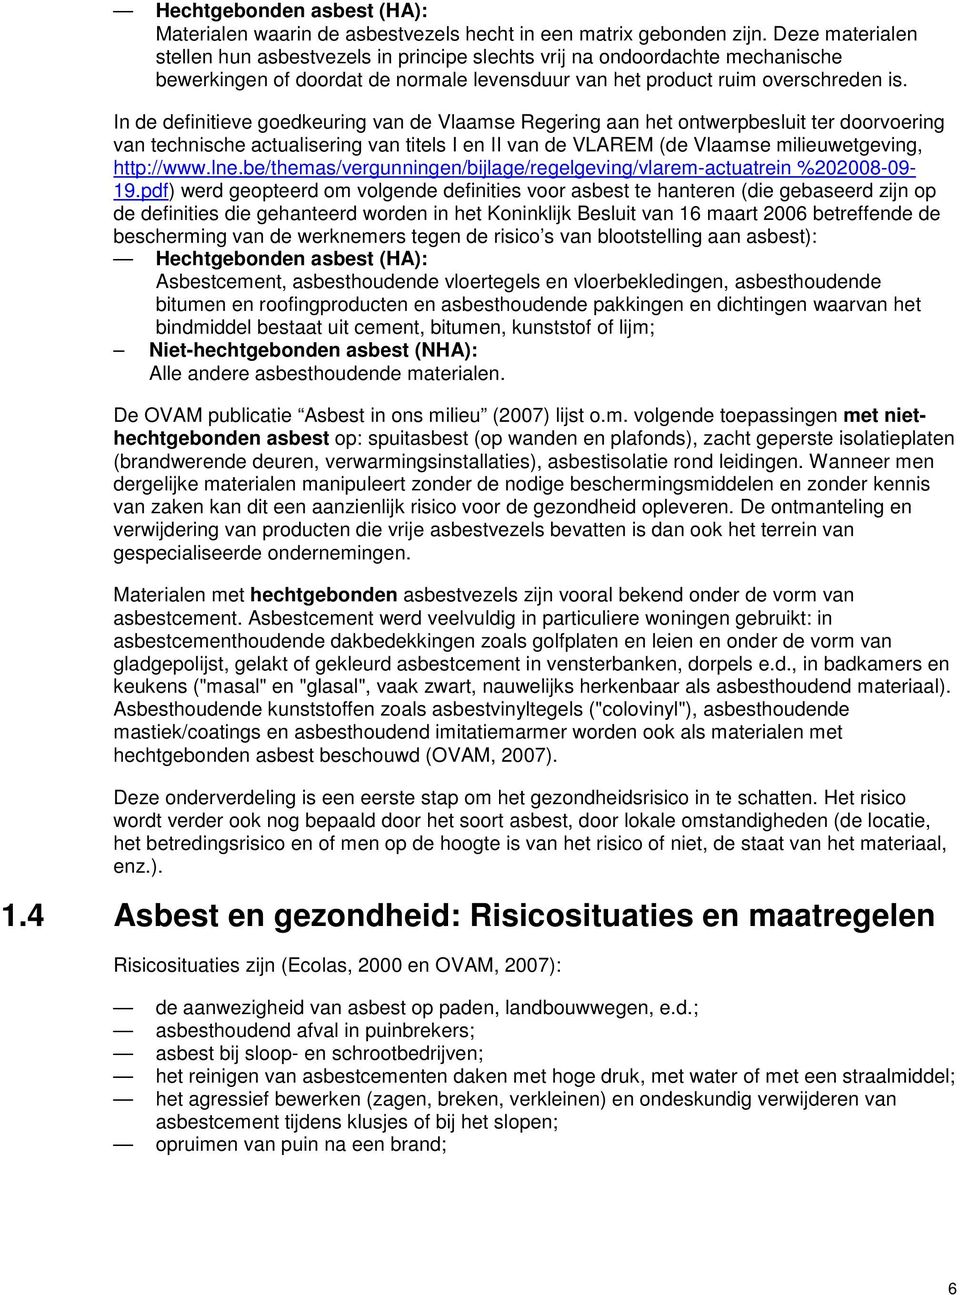 In de definitieve goedkeuring van de Vlaamse Regering aan het ontwerpbesluit ter doorvoering van technische actualisering van titels I en II van de VLAREM (de Vlaamse milieuwetgeving, http://www.lne.